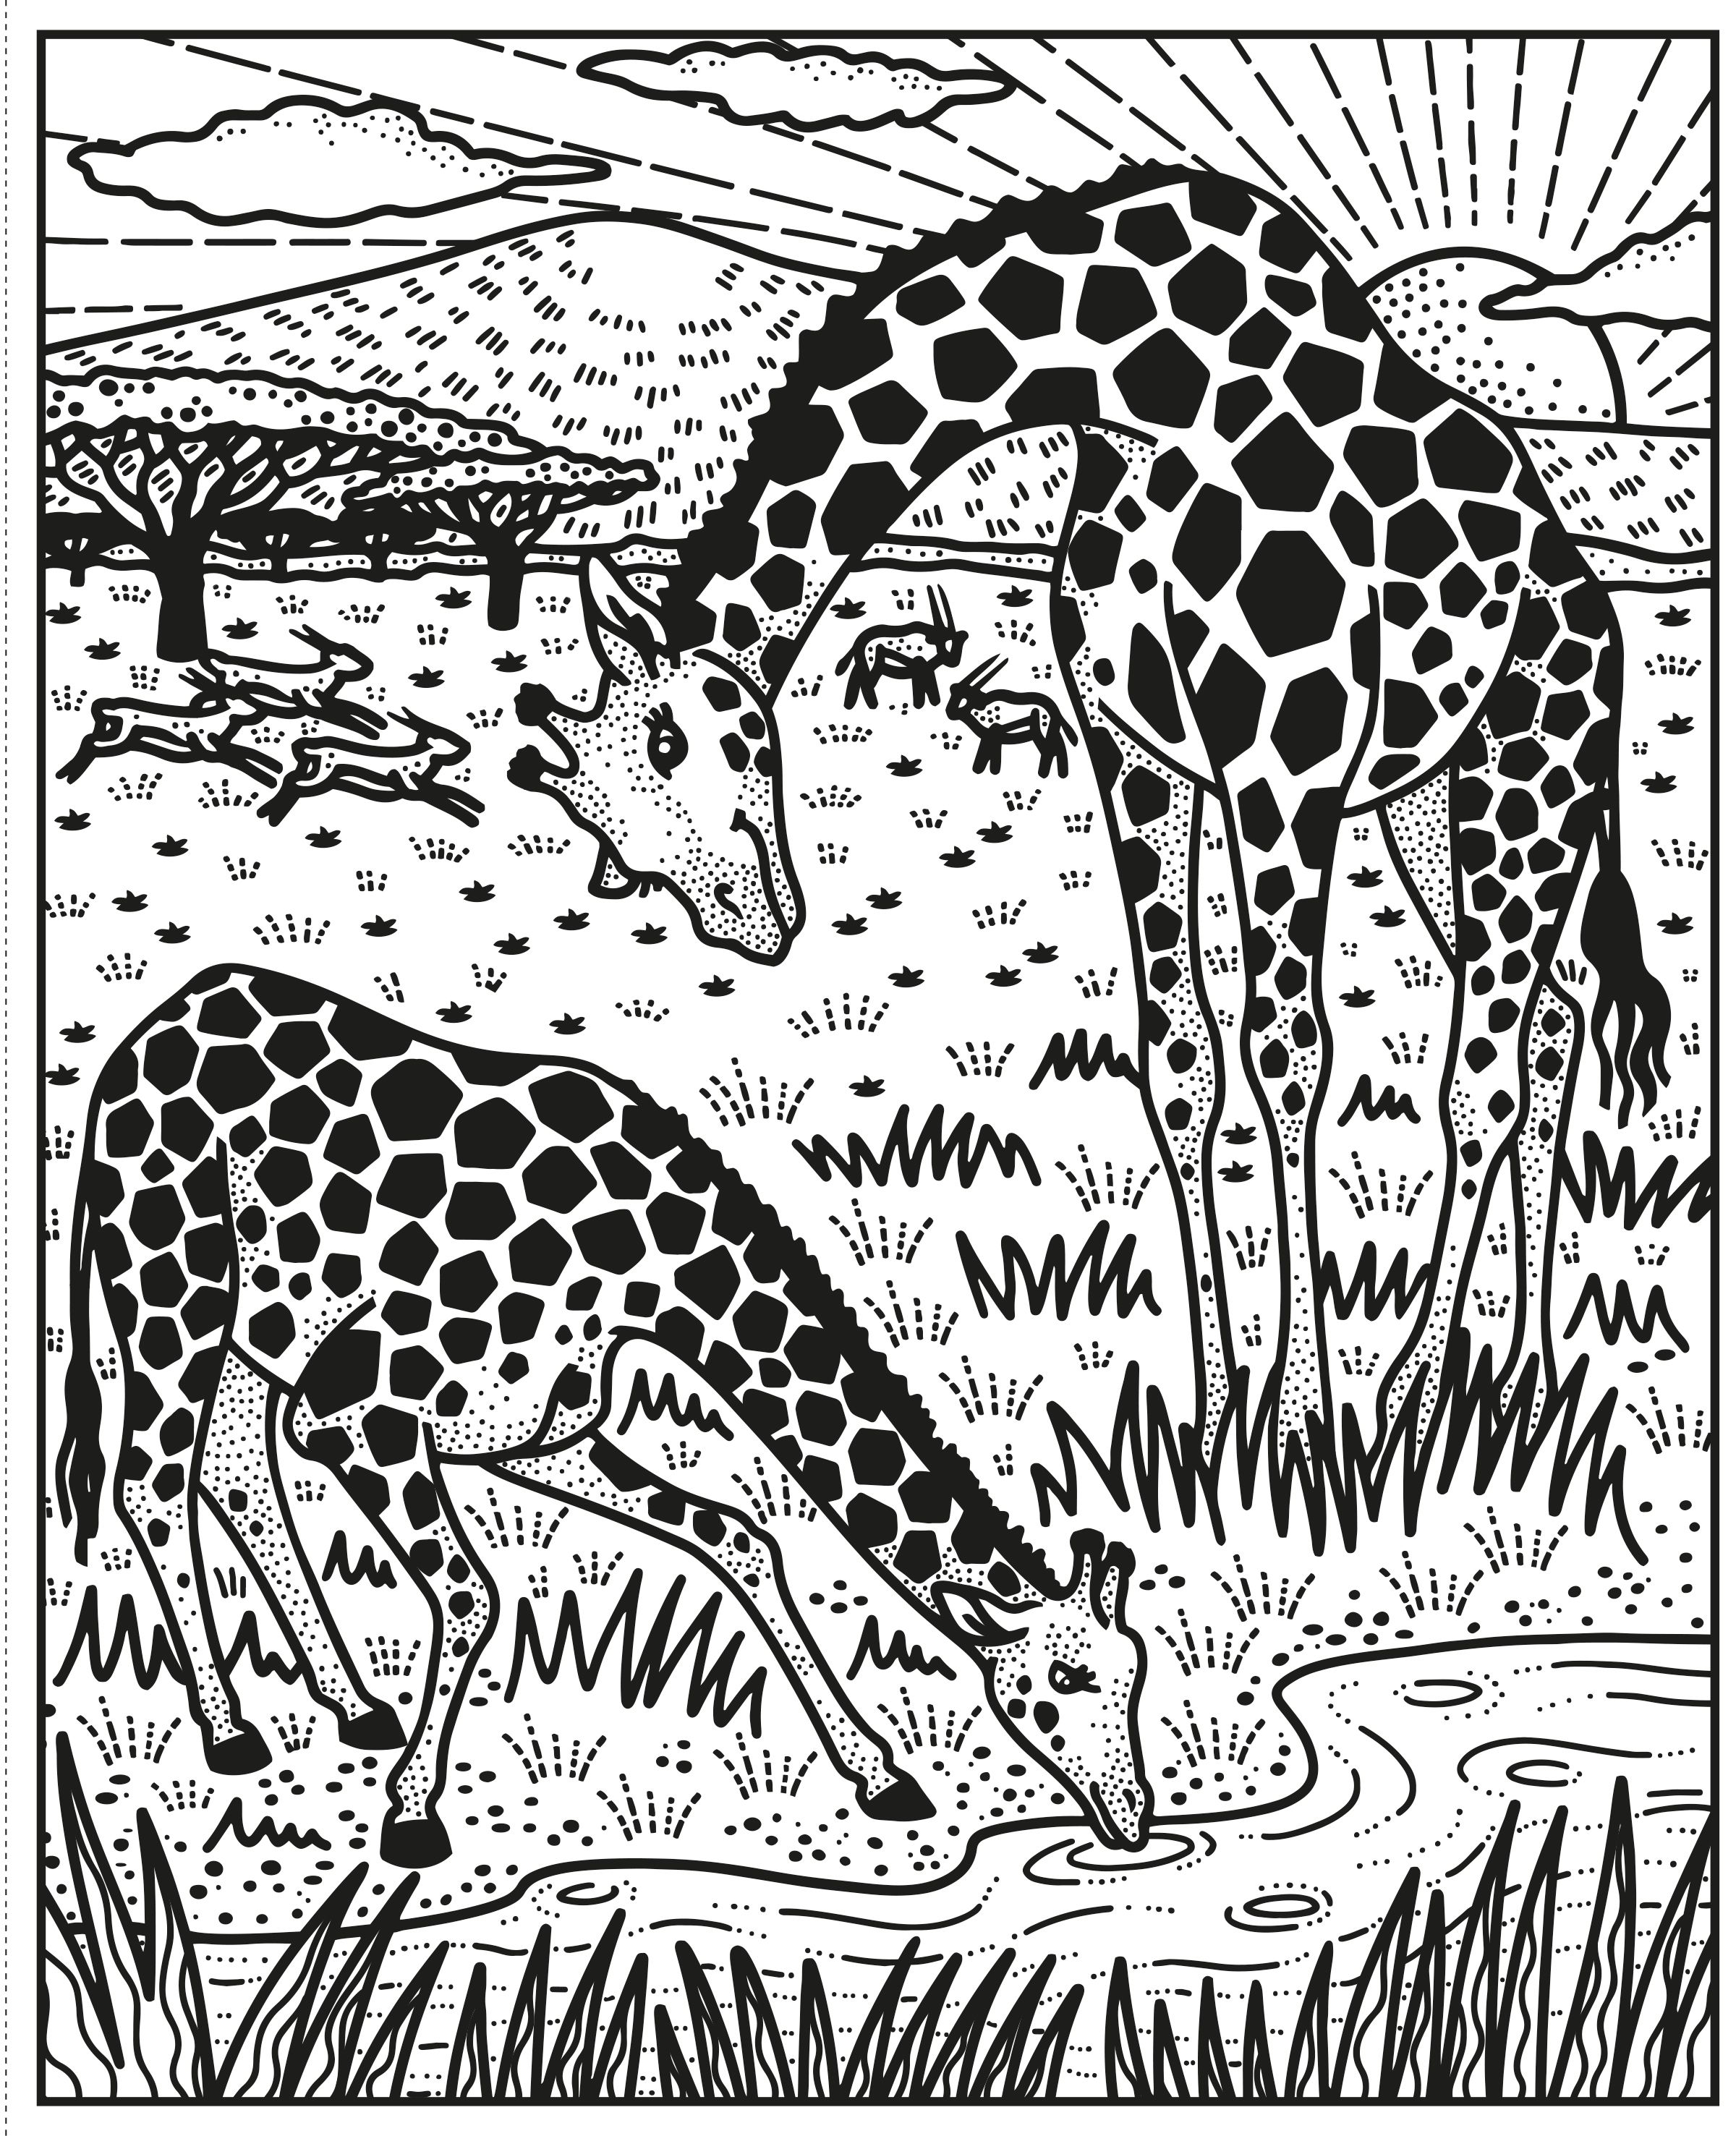 Usborne Books | Magic Painting Book - Wild Animals